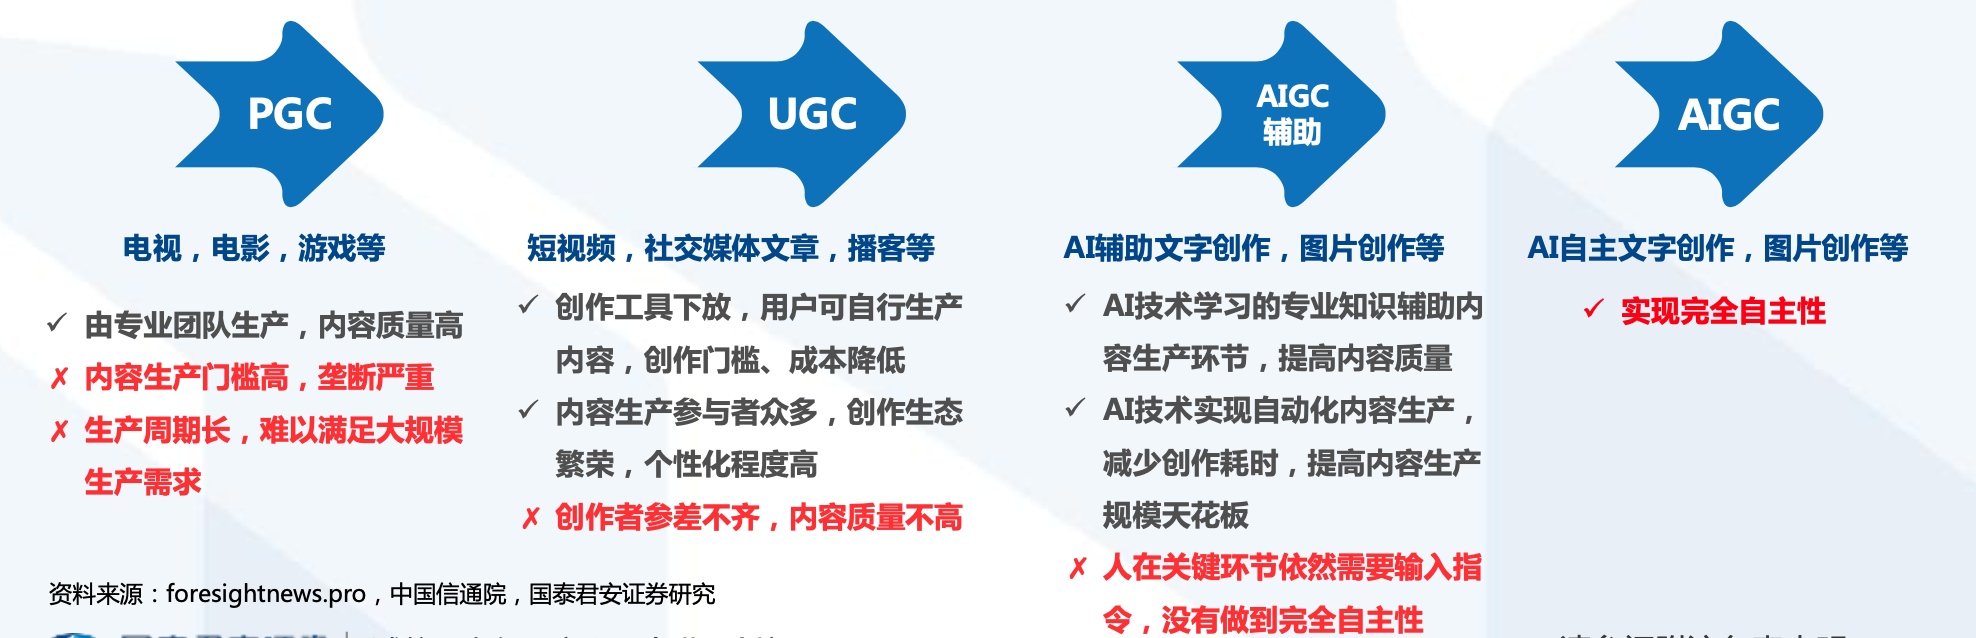 AIGC生态内容生产模式理论上会经历四个发展阶段